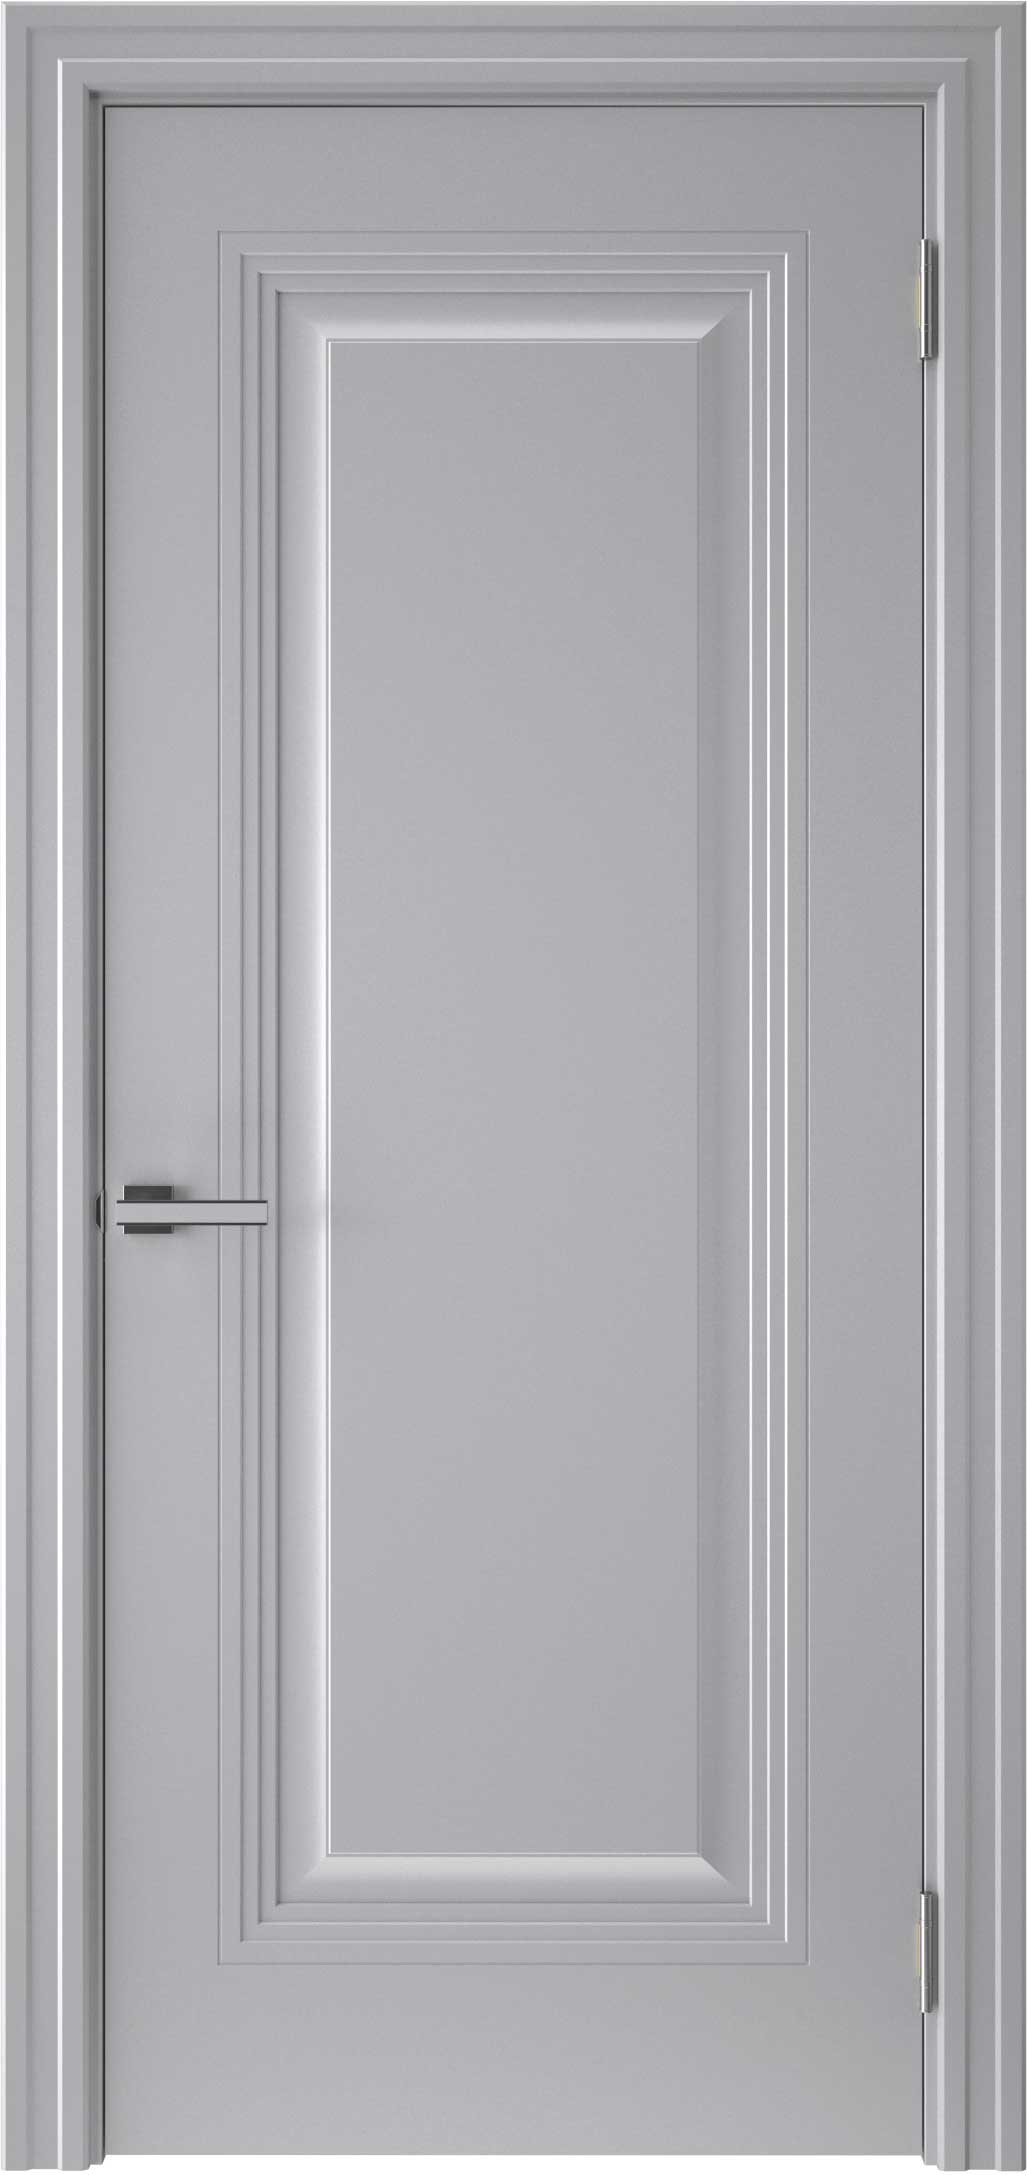 Двери крашеные (Эмаль) ТЕКОНА Смальта-48 глухое Серый ral размер 200 х 70 см. артикул F0000096596